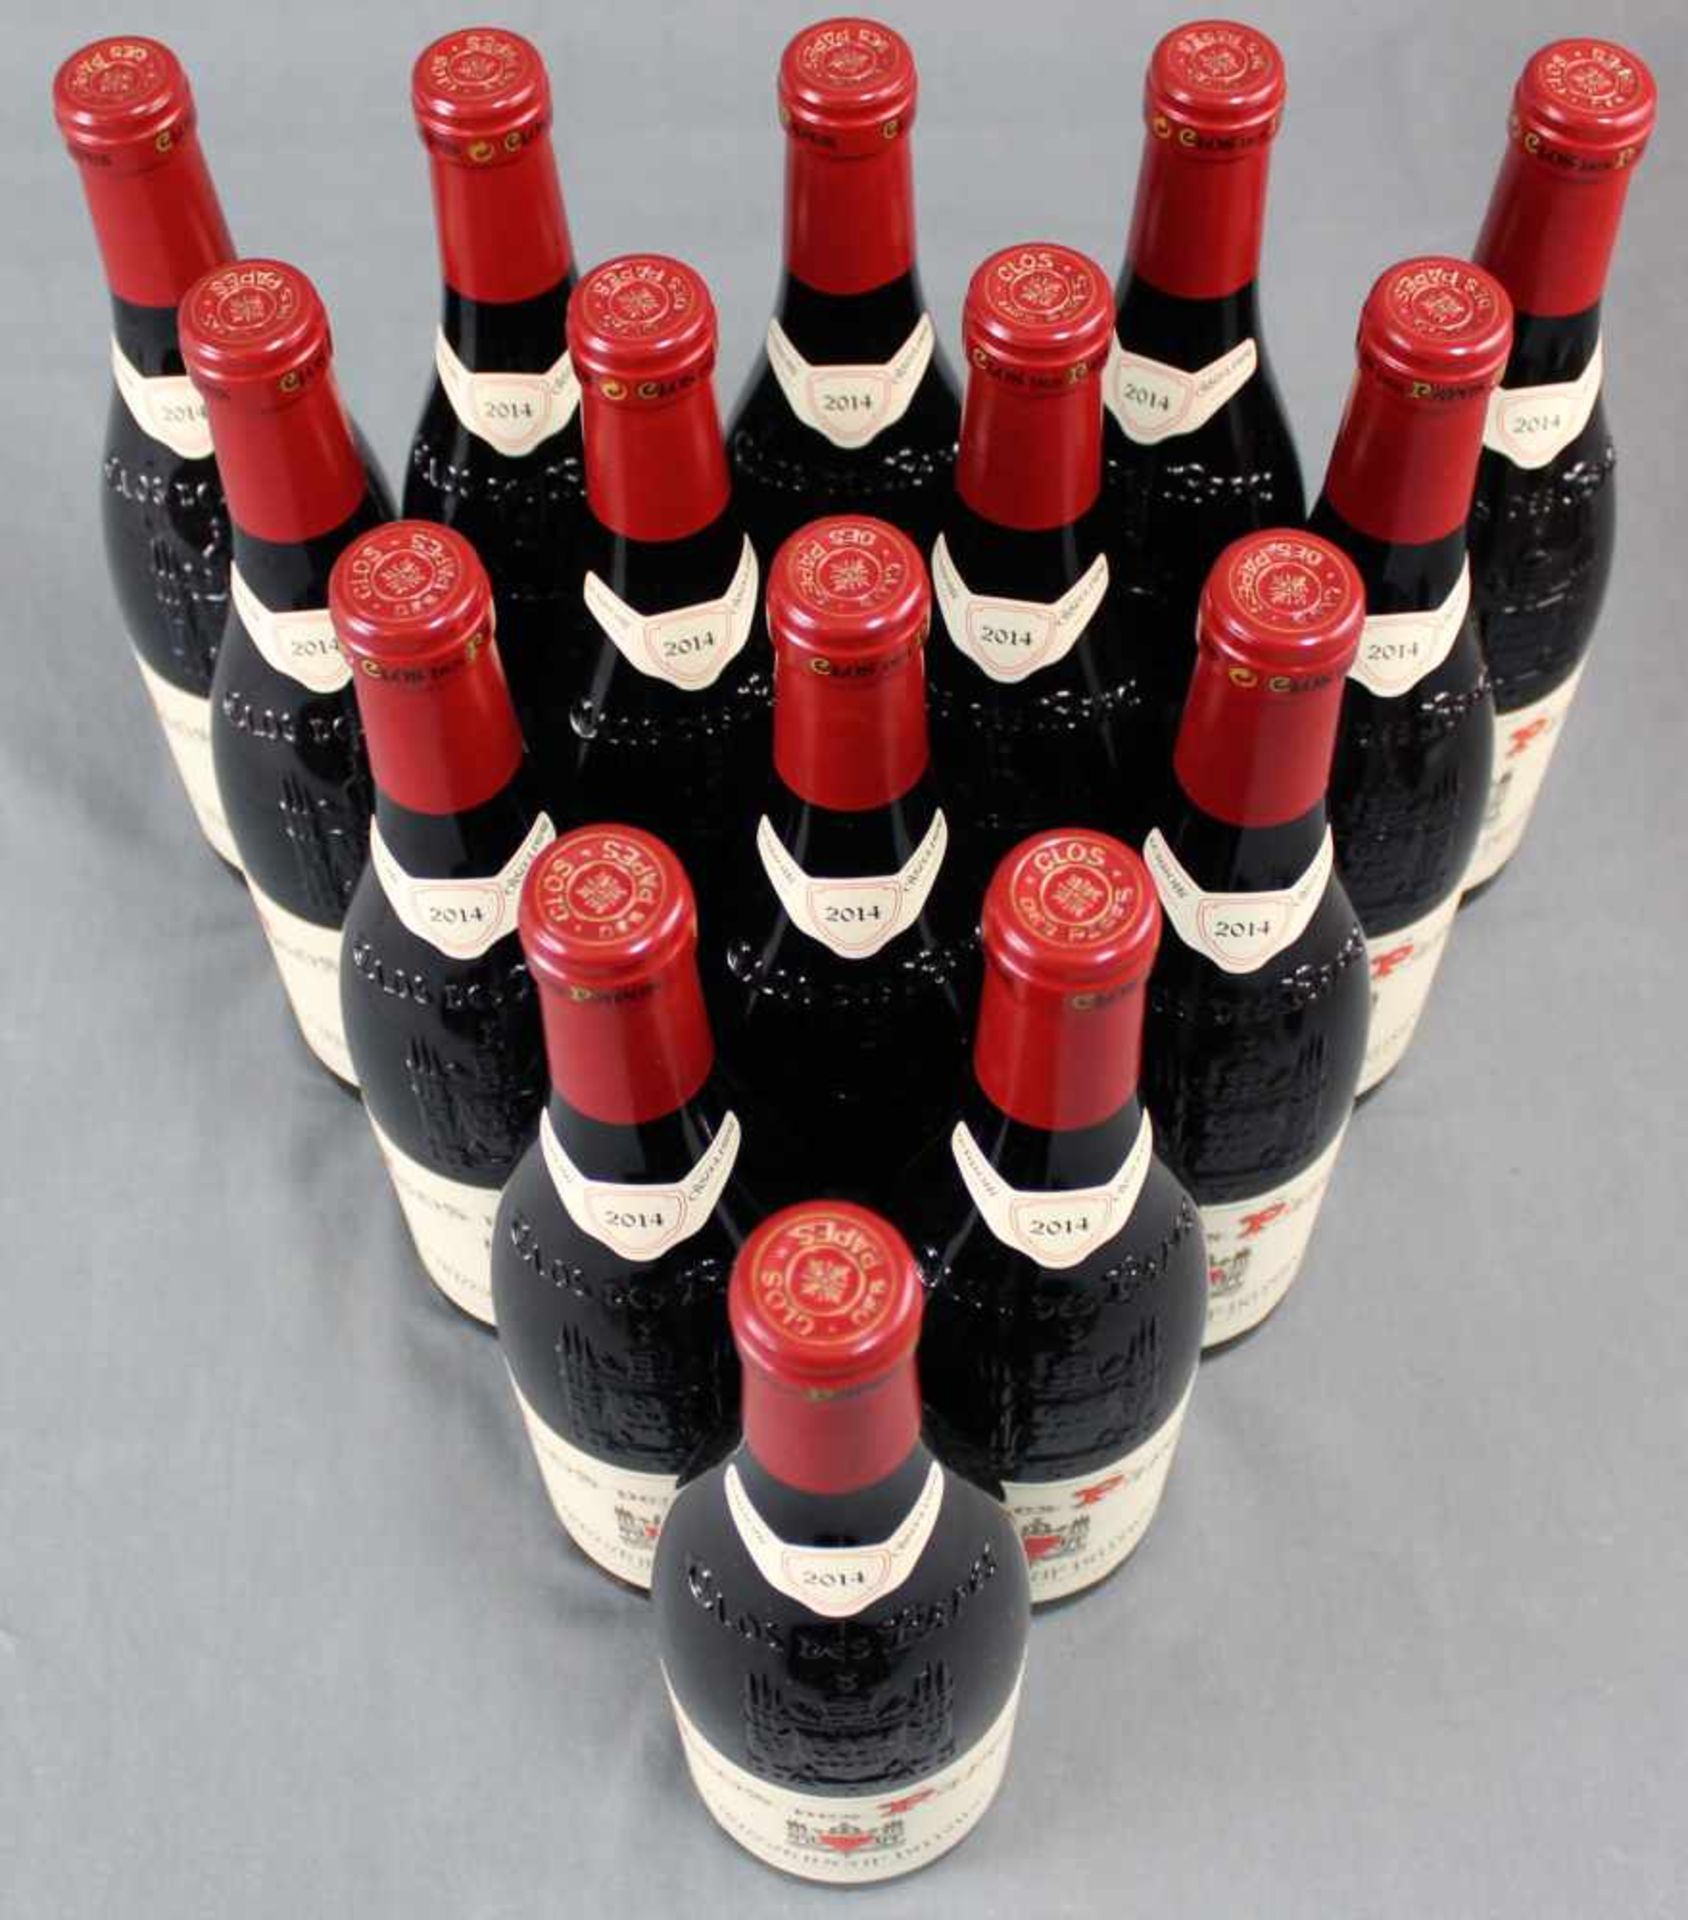 2014 Chateauneuf du Papes. "Clos des Papes". 14% Vol. 750 ml. 16 ganze Flaschen Rotwein - Bild 5 aus 6